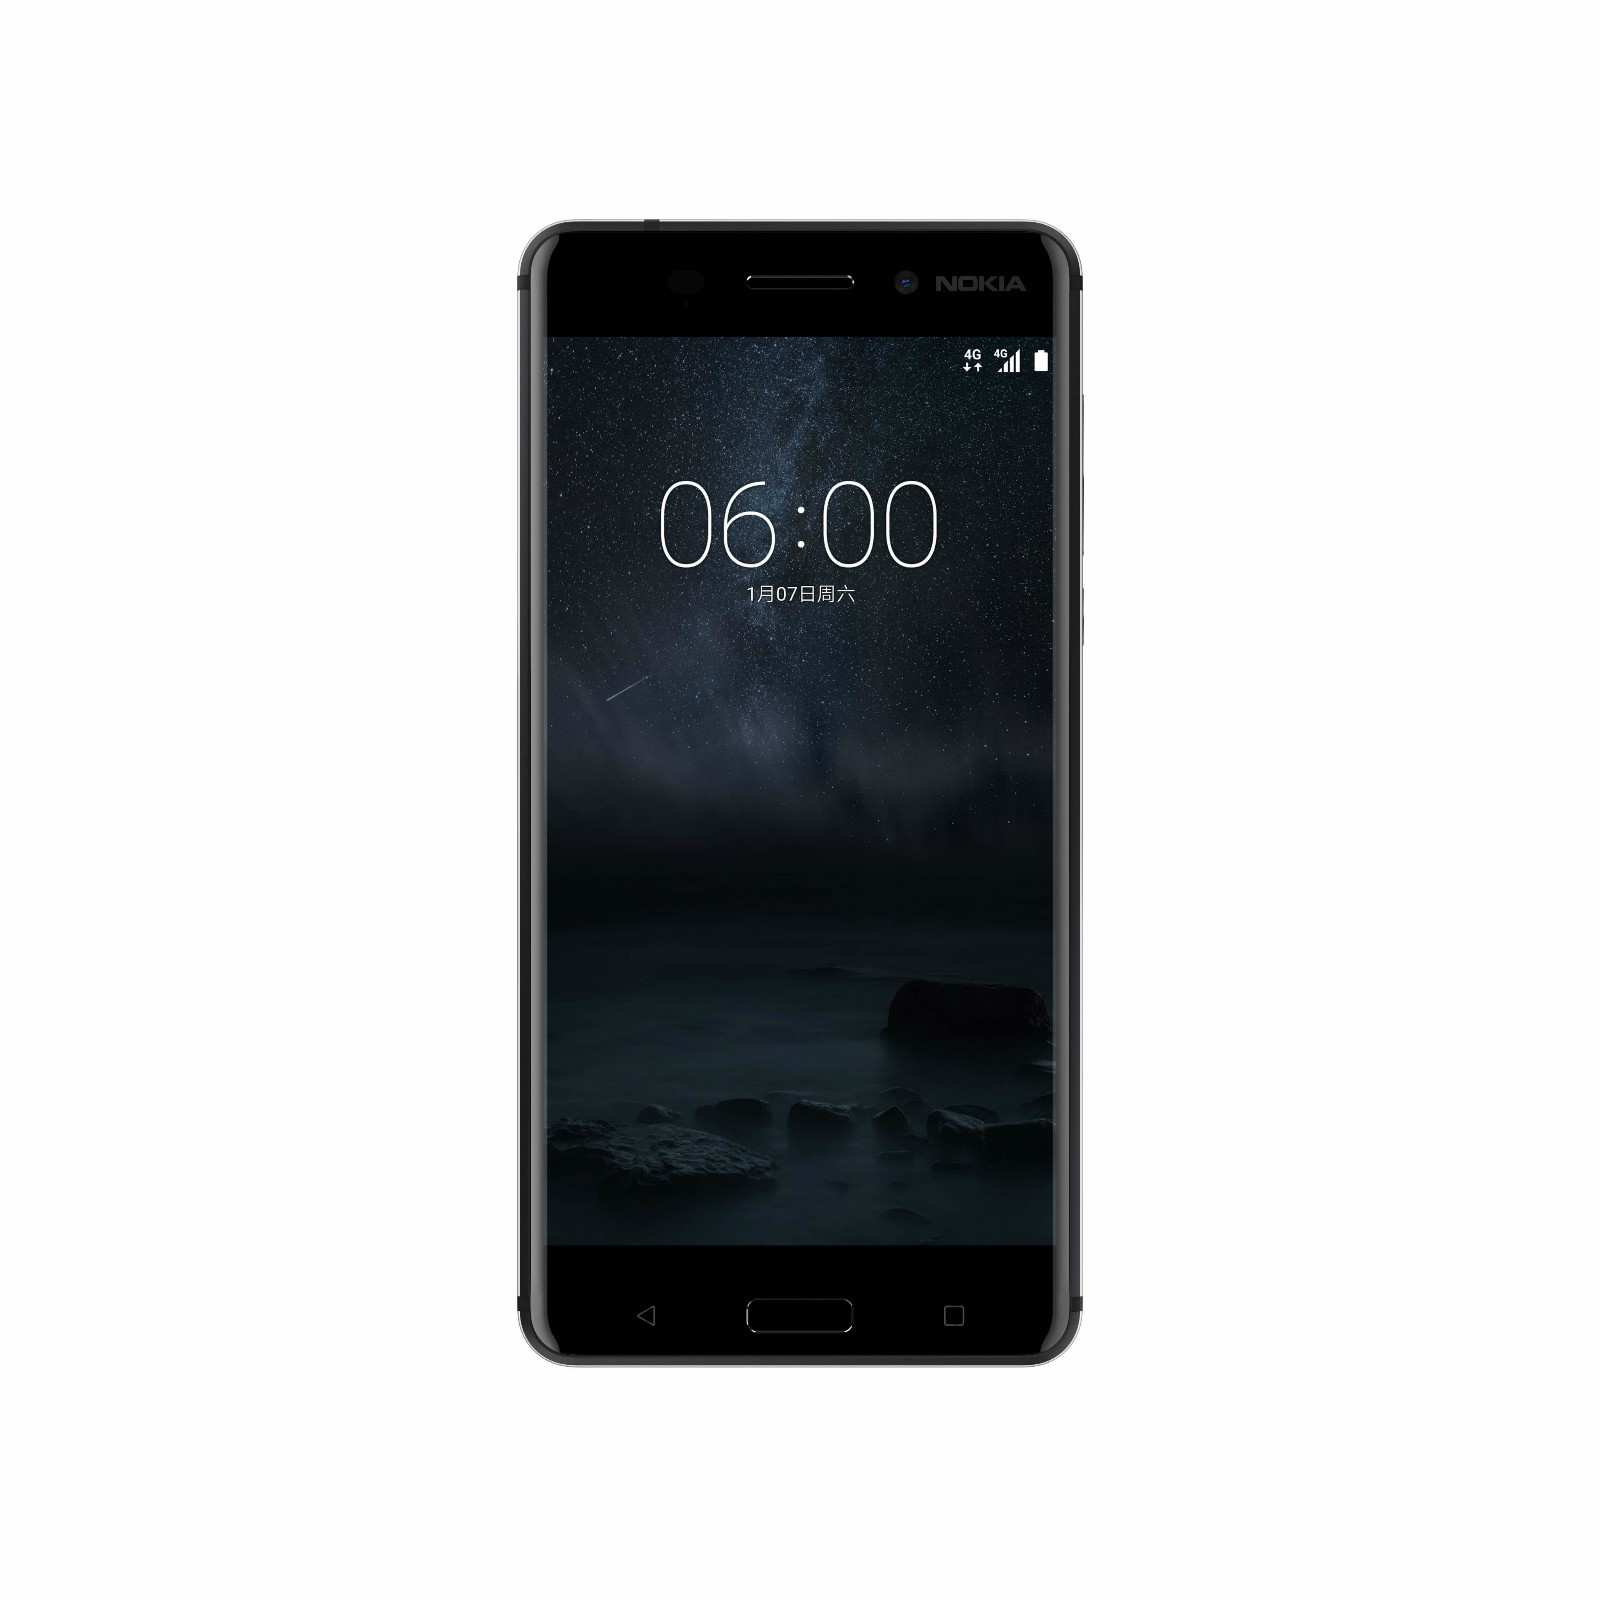  Nokia 6正式发布：定价1699元  中国首发 智能公会